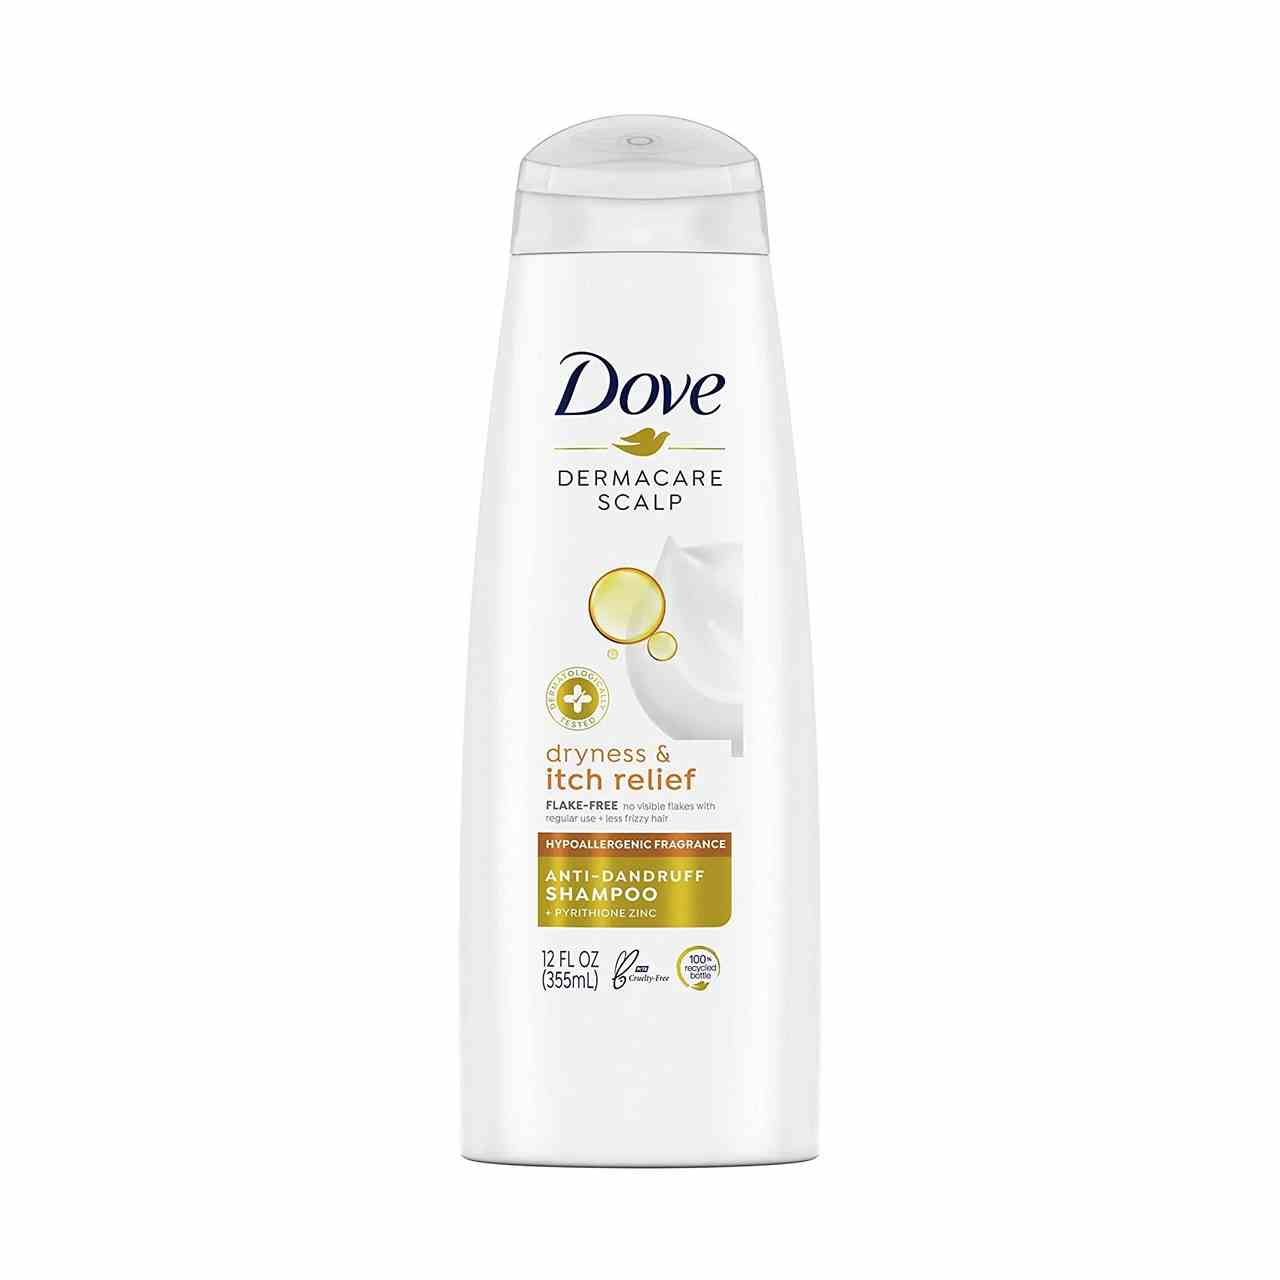 Dove DermaCare Scalp Dryness & Itch Relief Anti Dandruff Shampoo weiße Flasche auf weißem Hintergrund